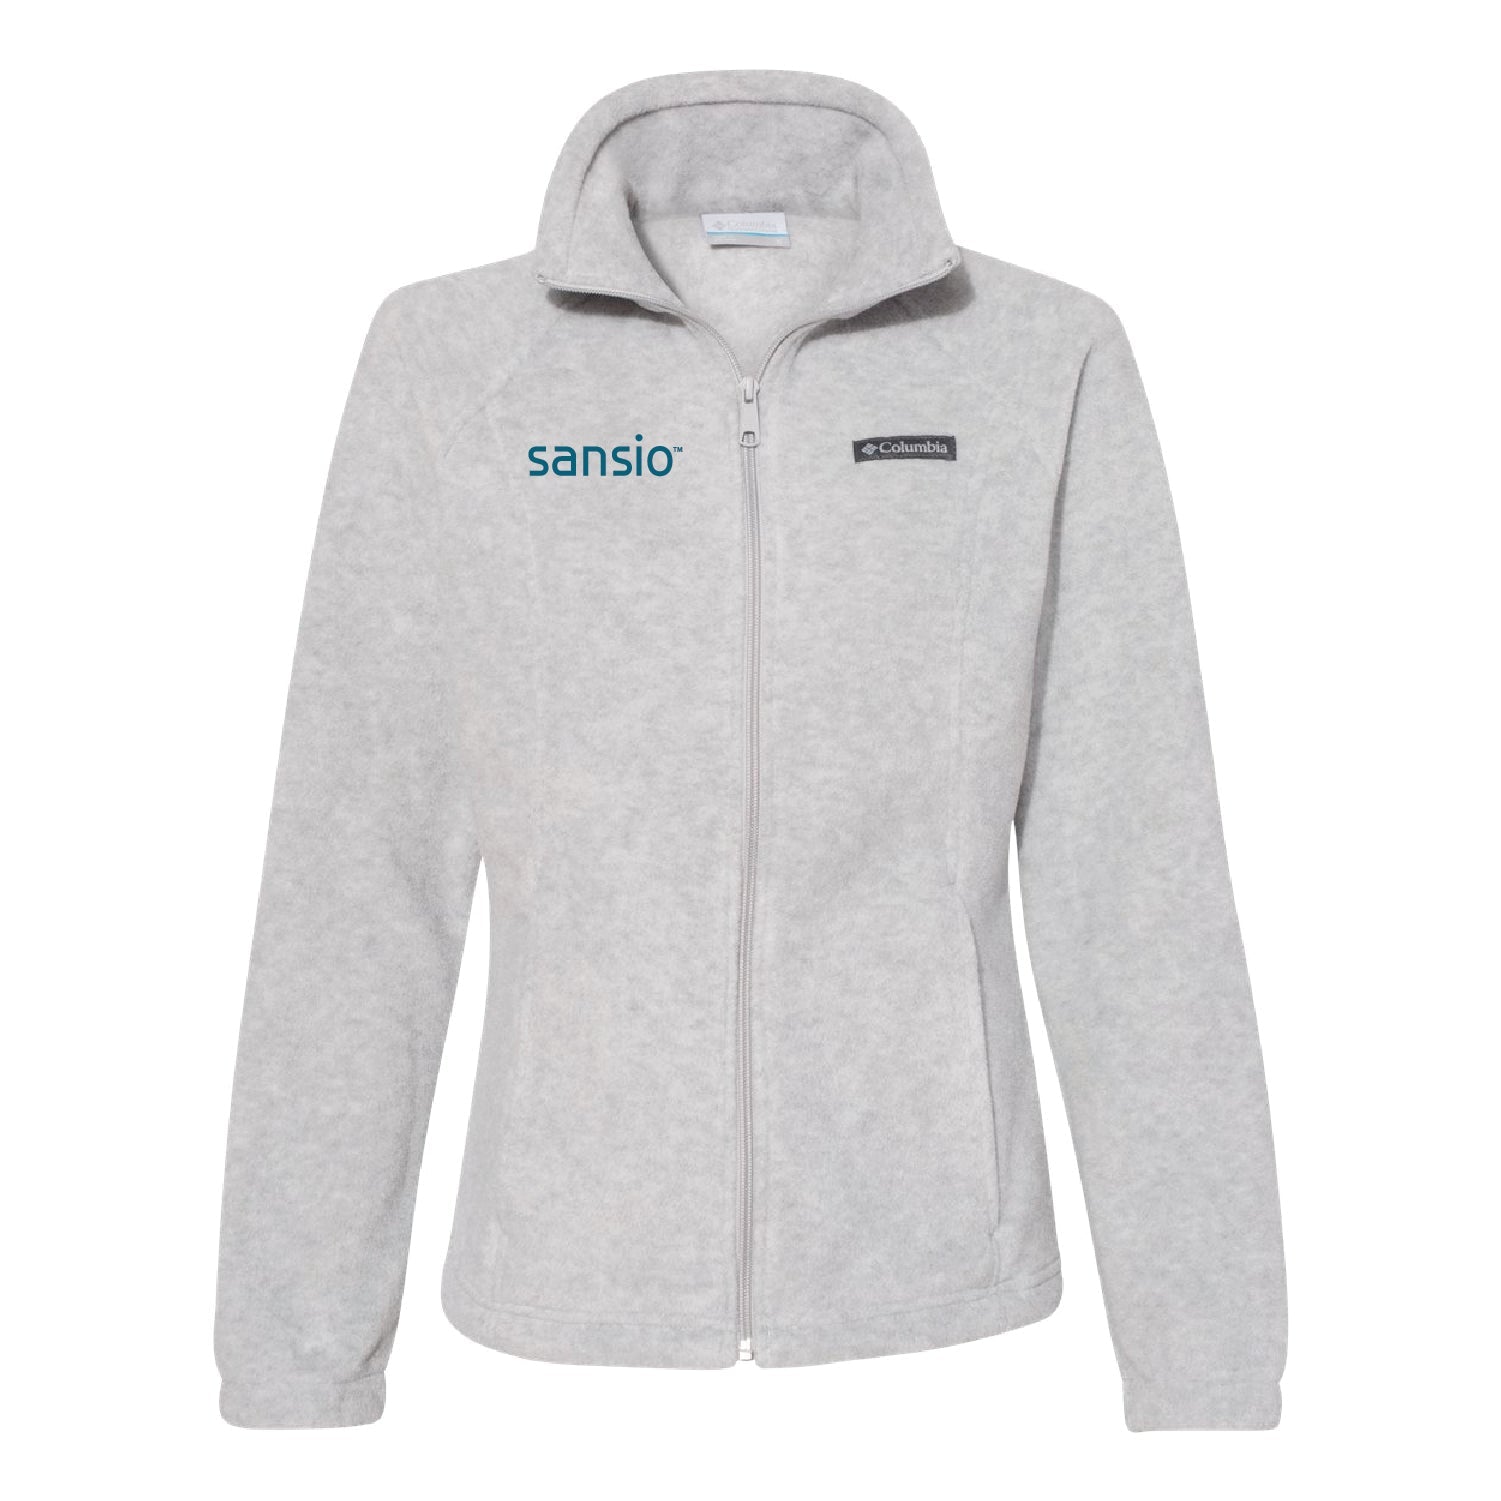 Sansio Women’s Fleece Full-Zip Jacket - DSP On Demand